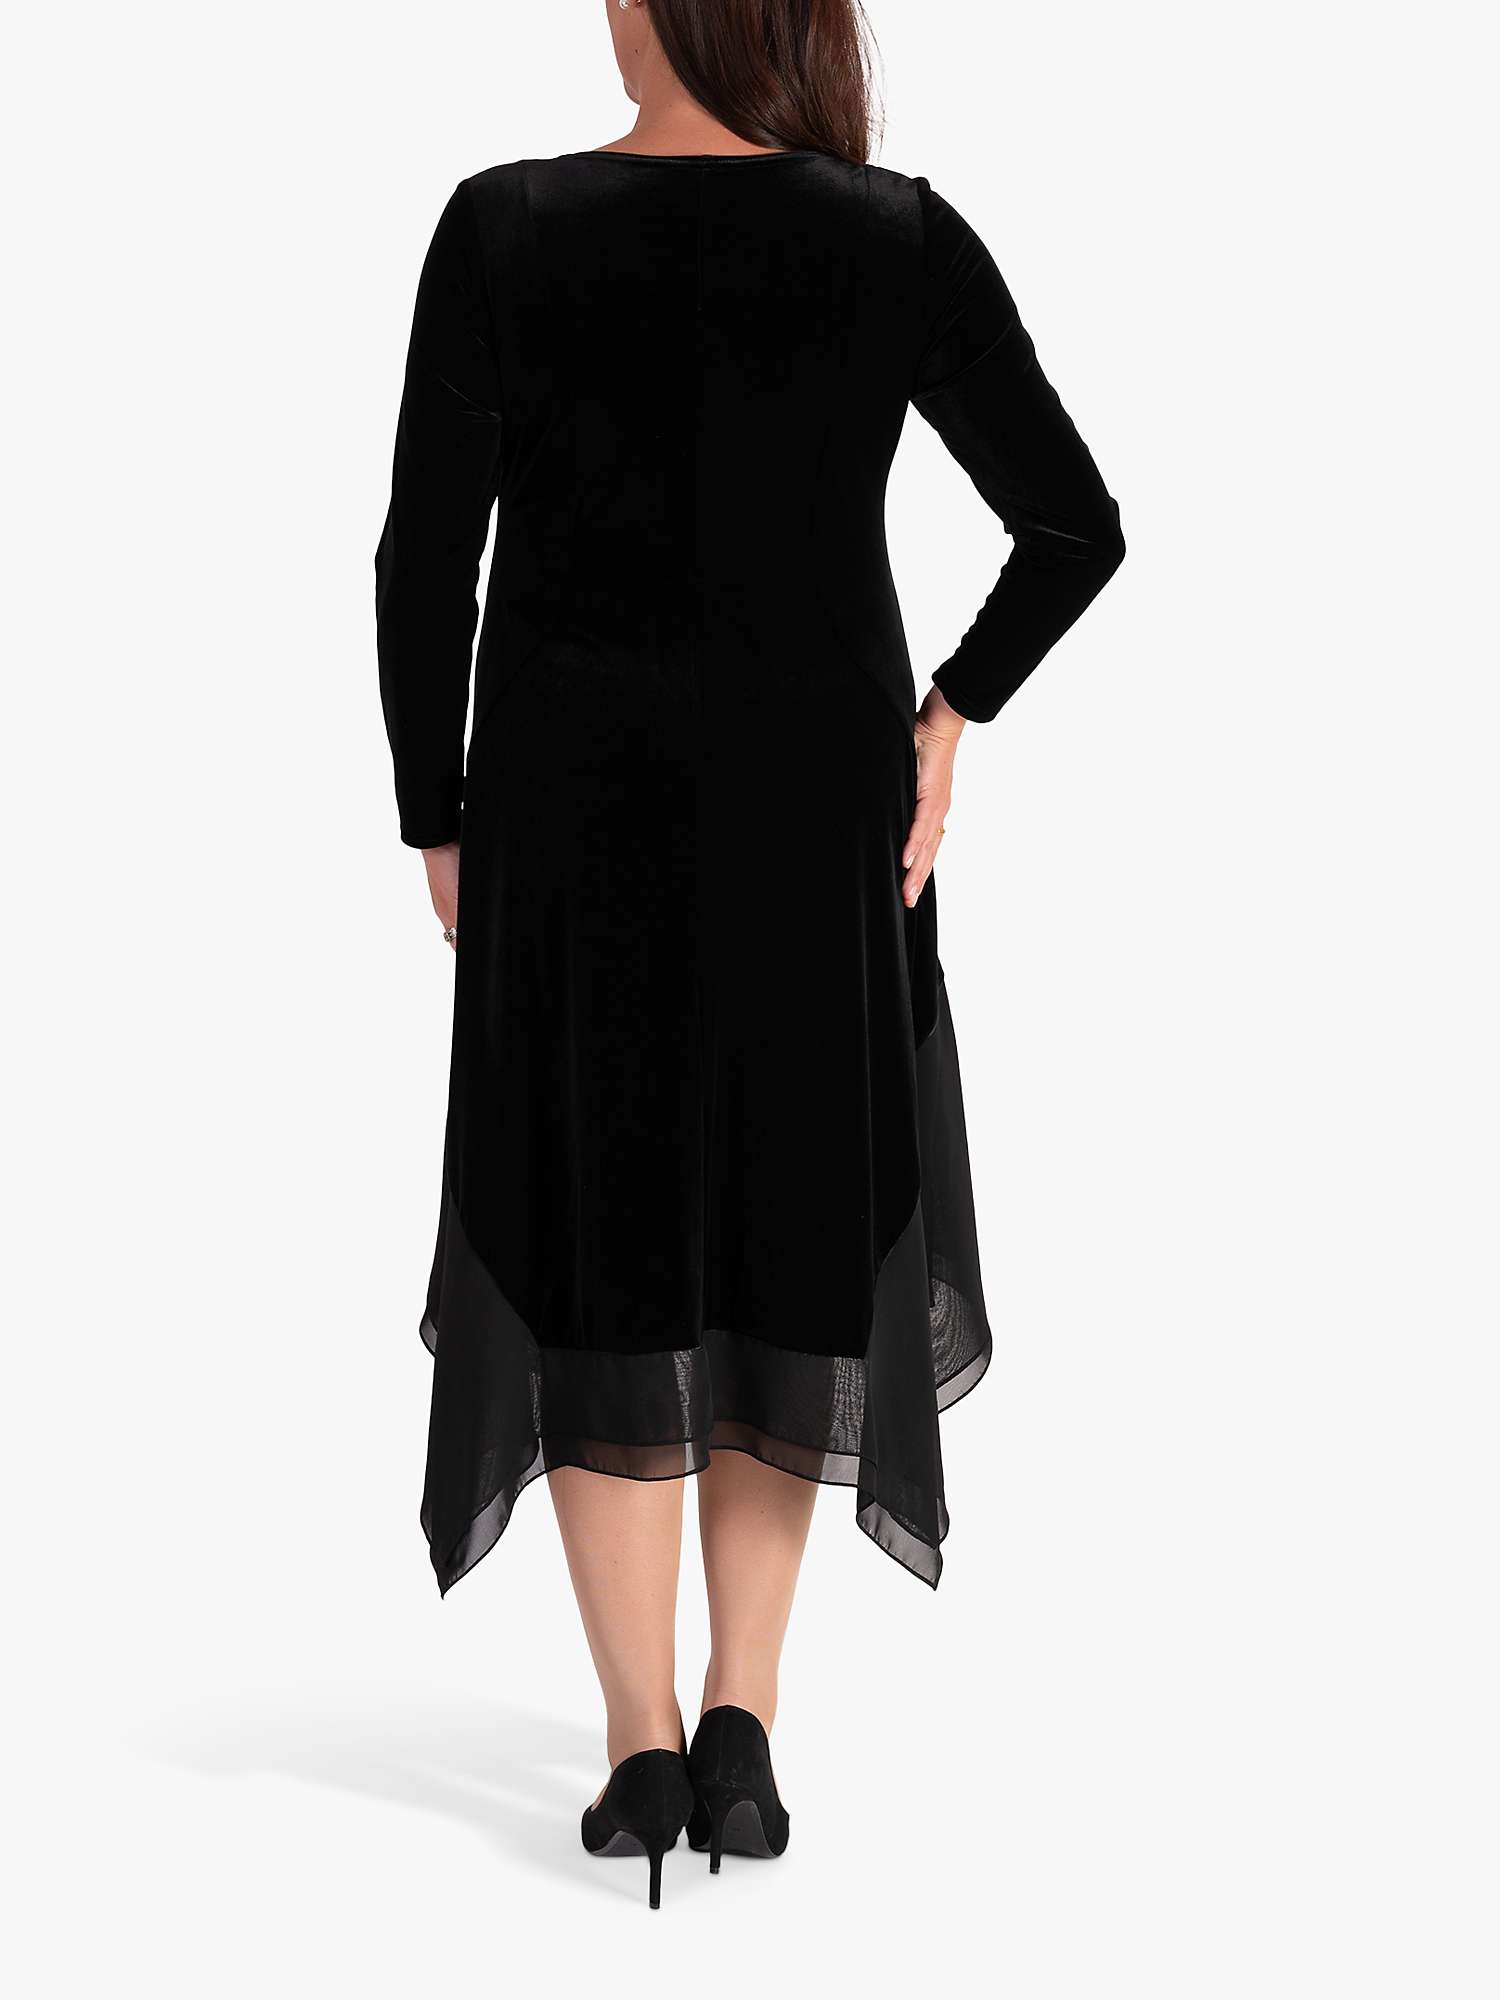 Chesca Stretch Velvet Drape Dress, Black at John Lewis & Partners